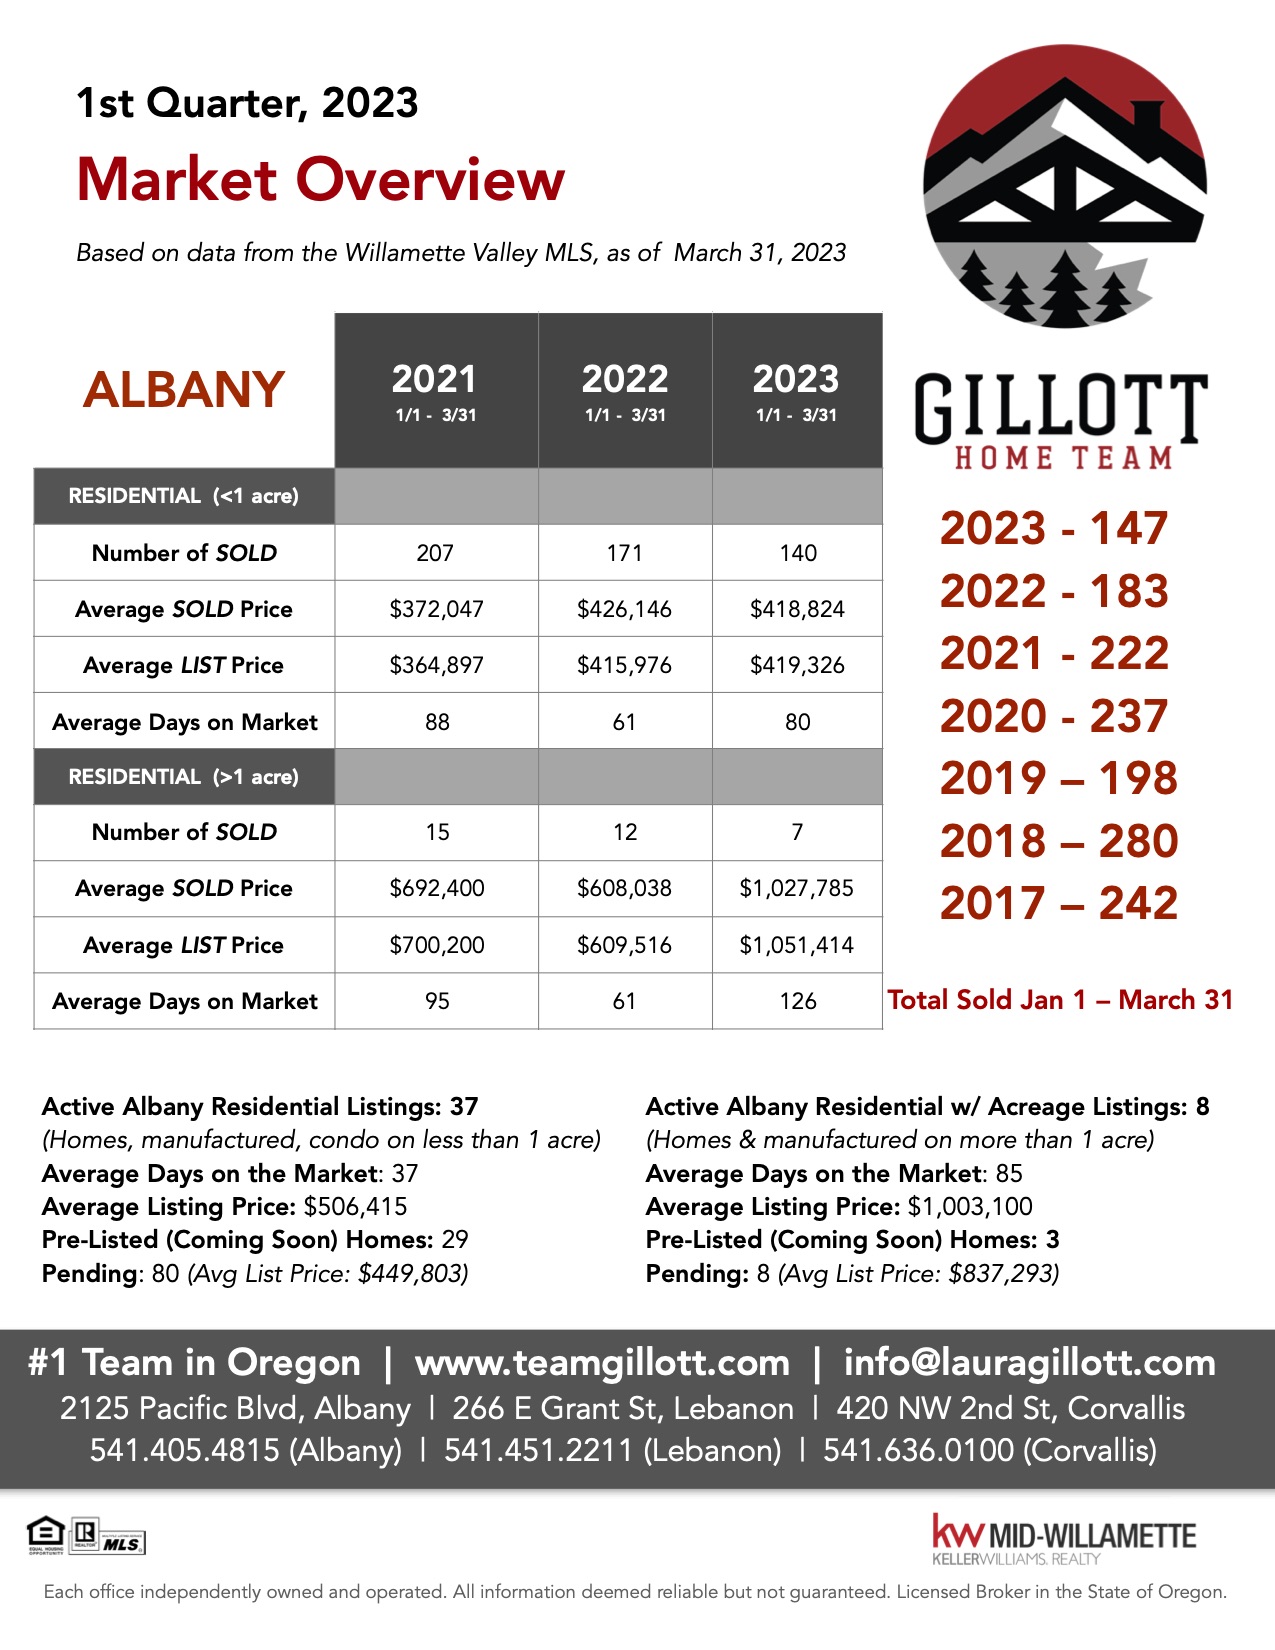 1st Quarter Albany 2023 (1).jpg